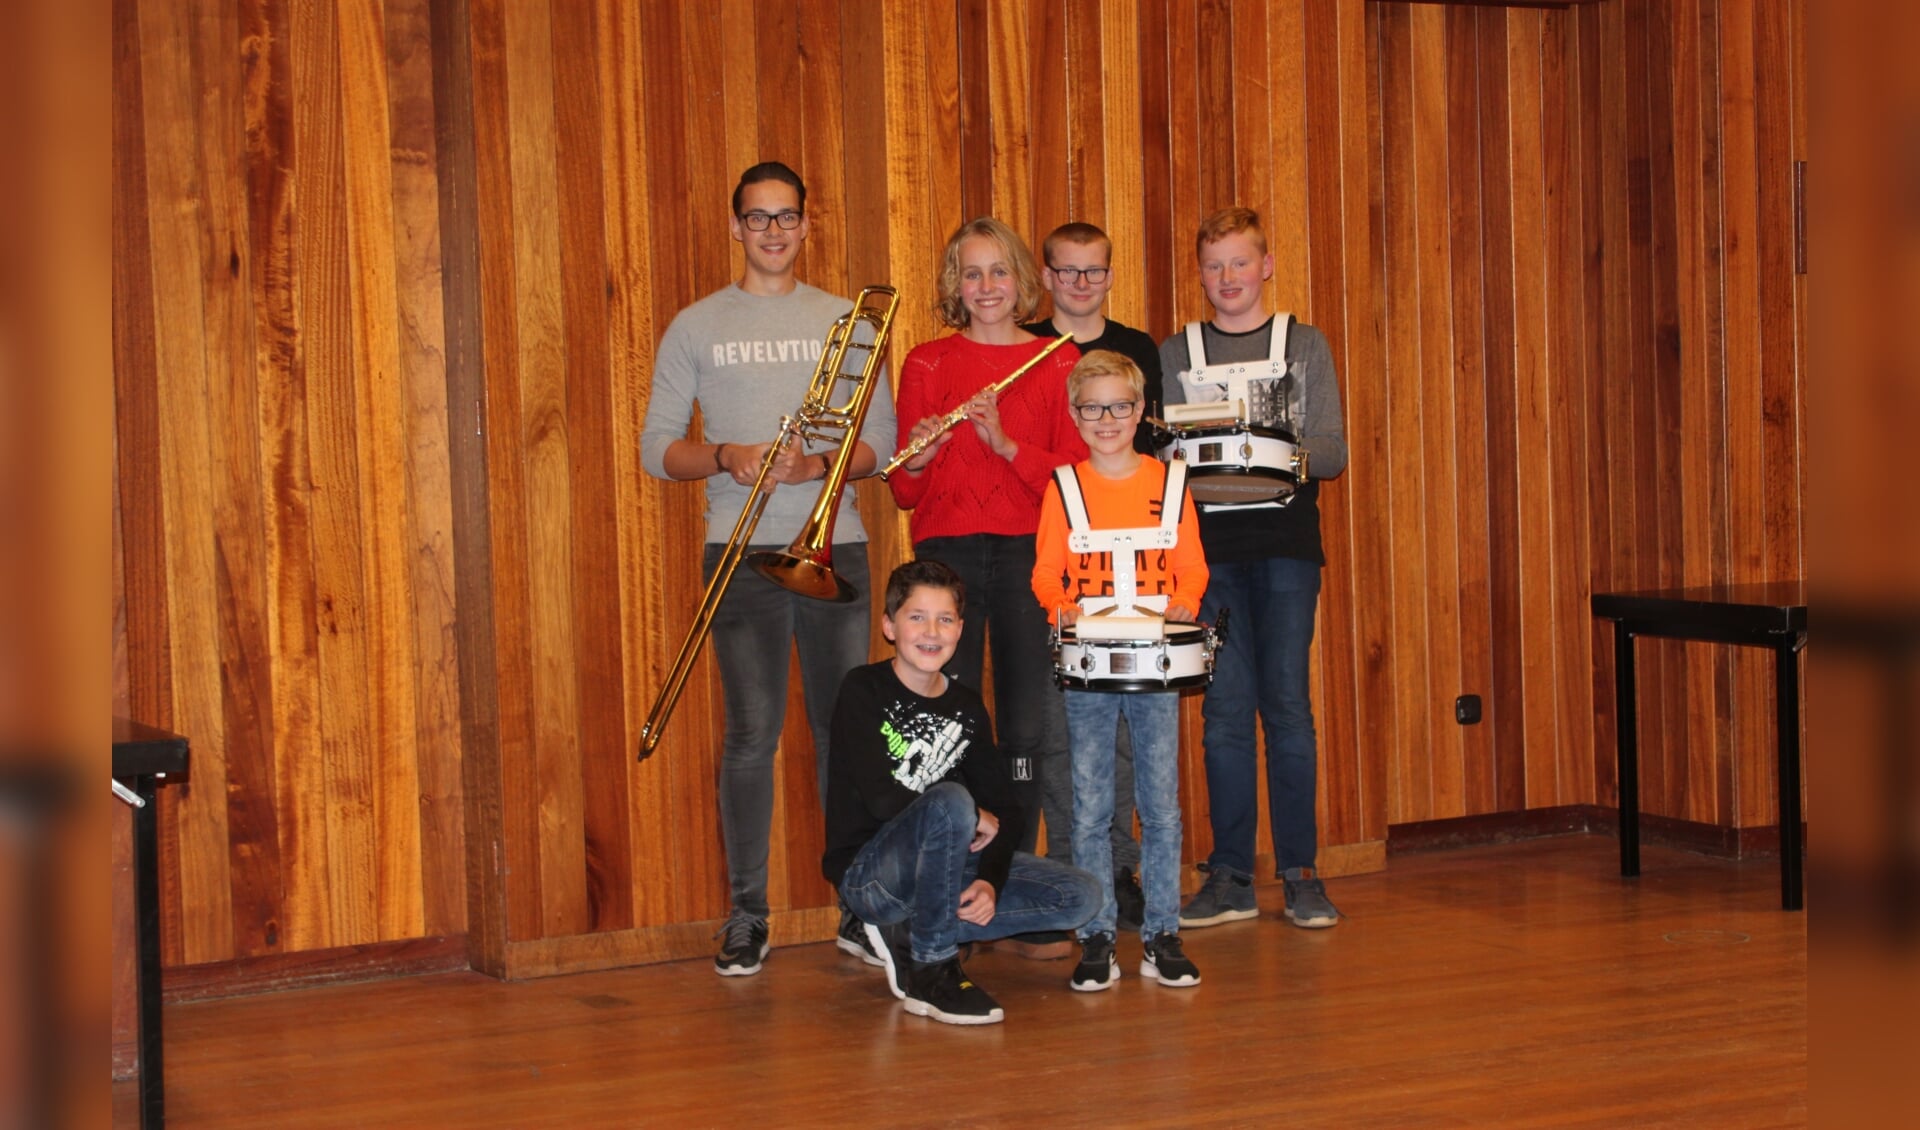 De aangeschafte instrumenten zijn ter beschikking gesteld aan jeugdleden. Foto: PR